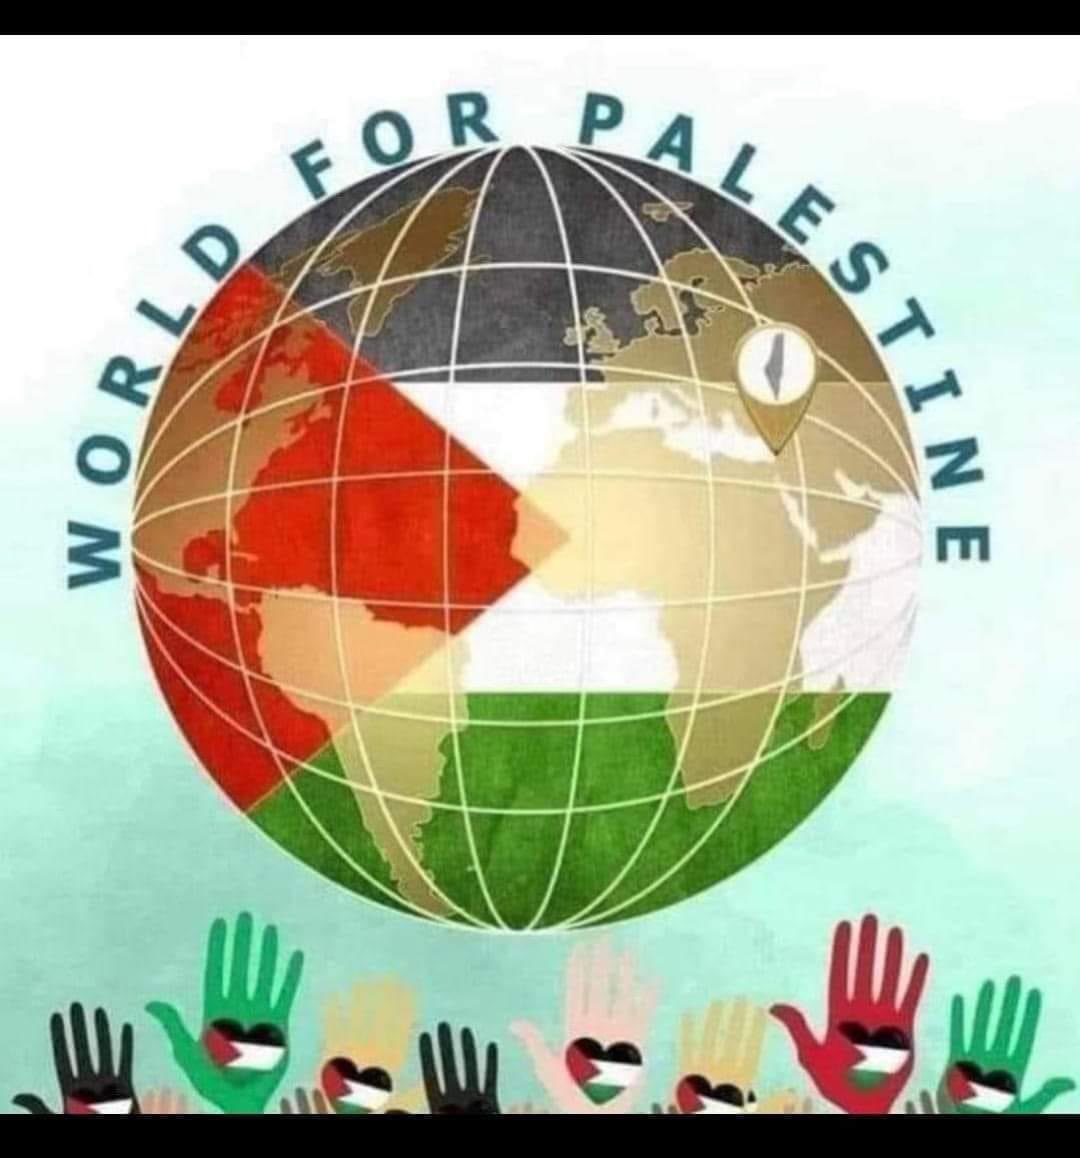 SUPPORT palestine 🇵🇸✊🏼🇵🇸✊🏼

#FreePalestine #palestine #PalestinianLivesMatter